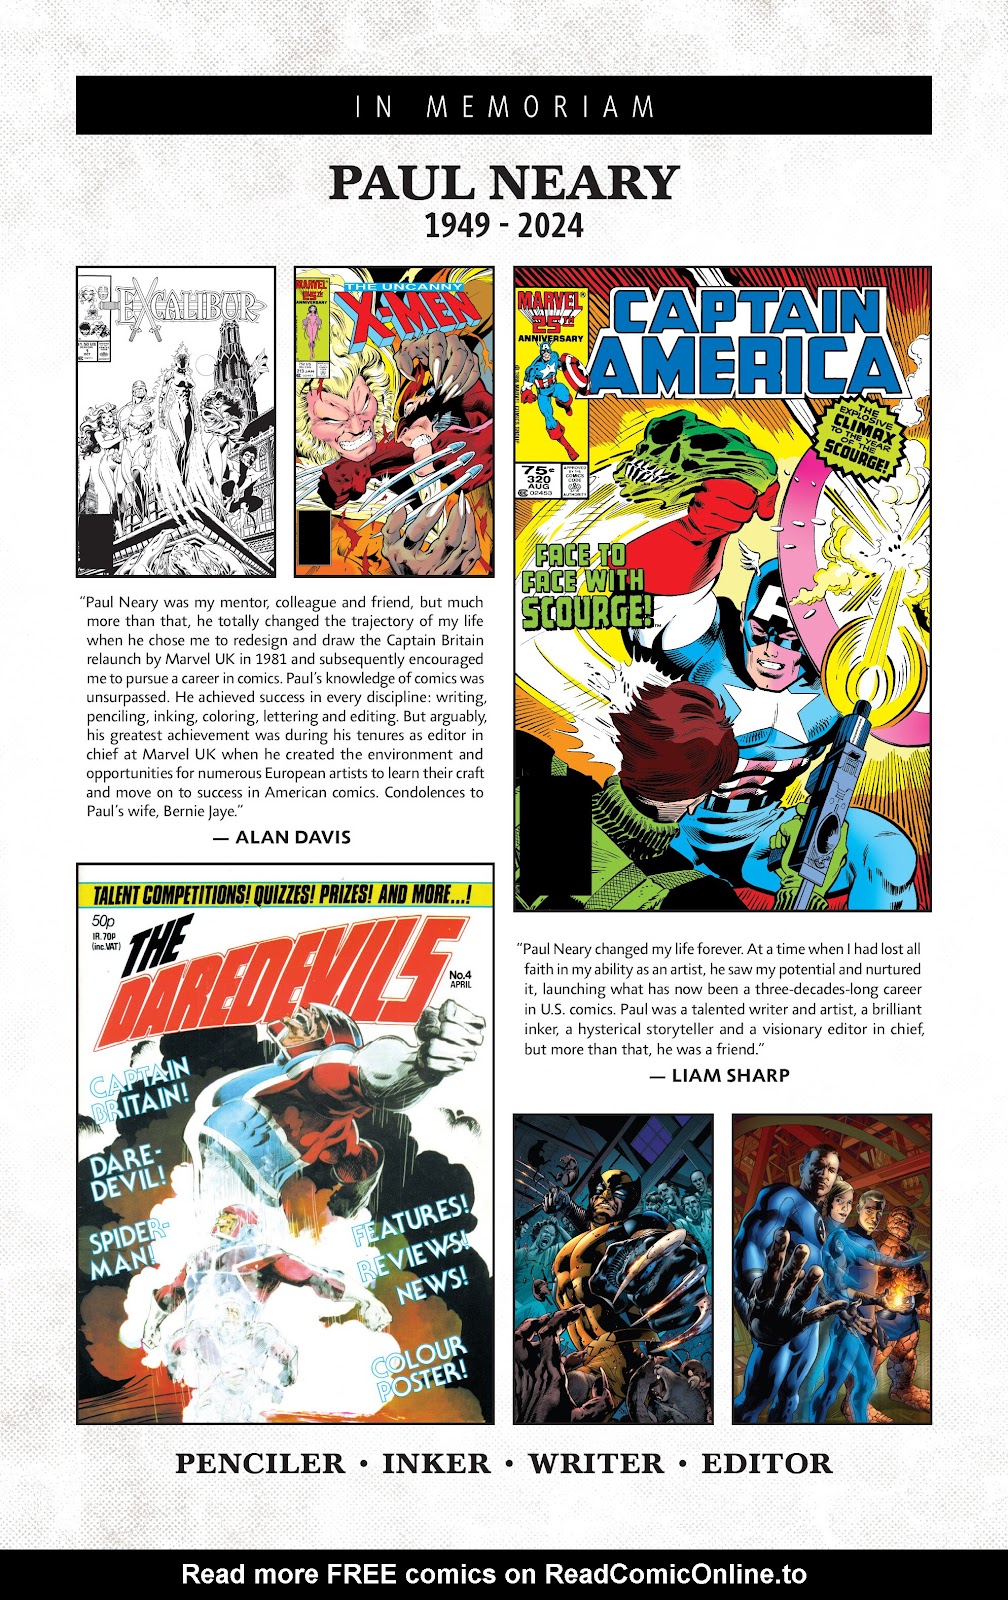 Symbiote Spider-Man 2099 issue 2 - Page 4